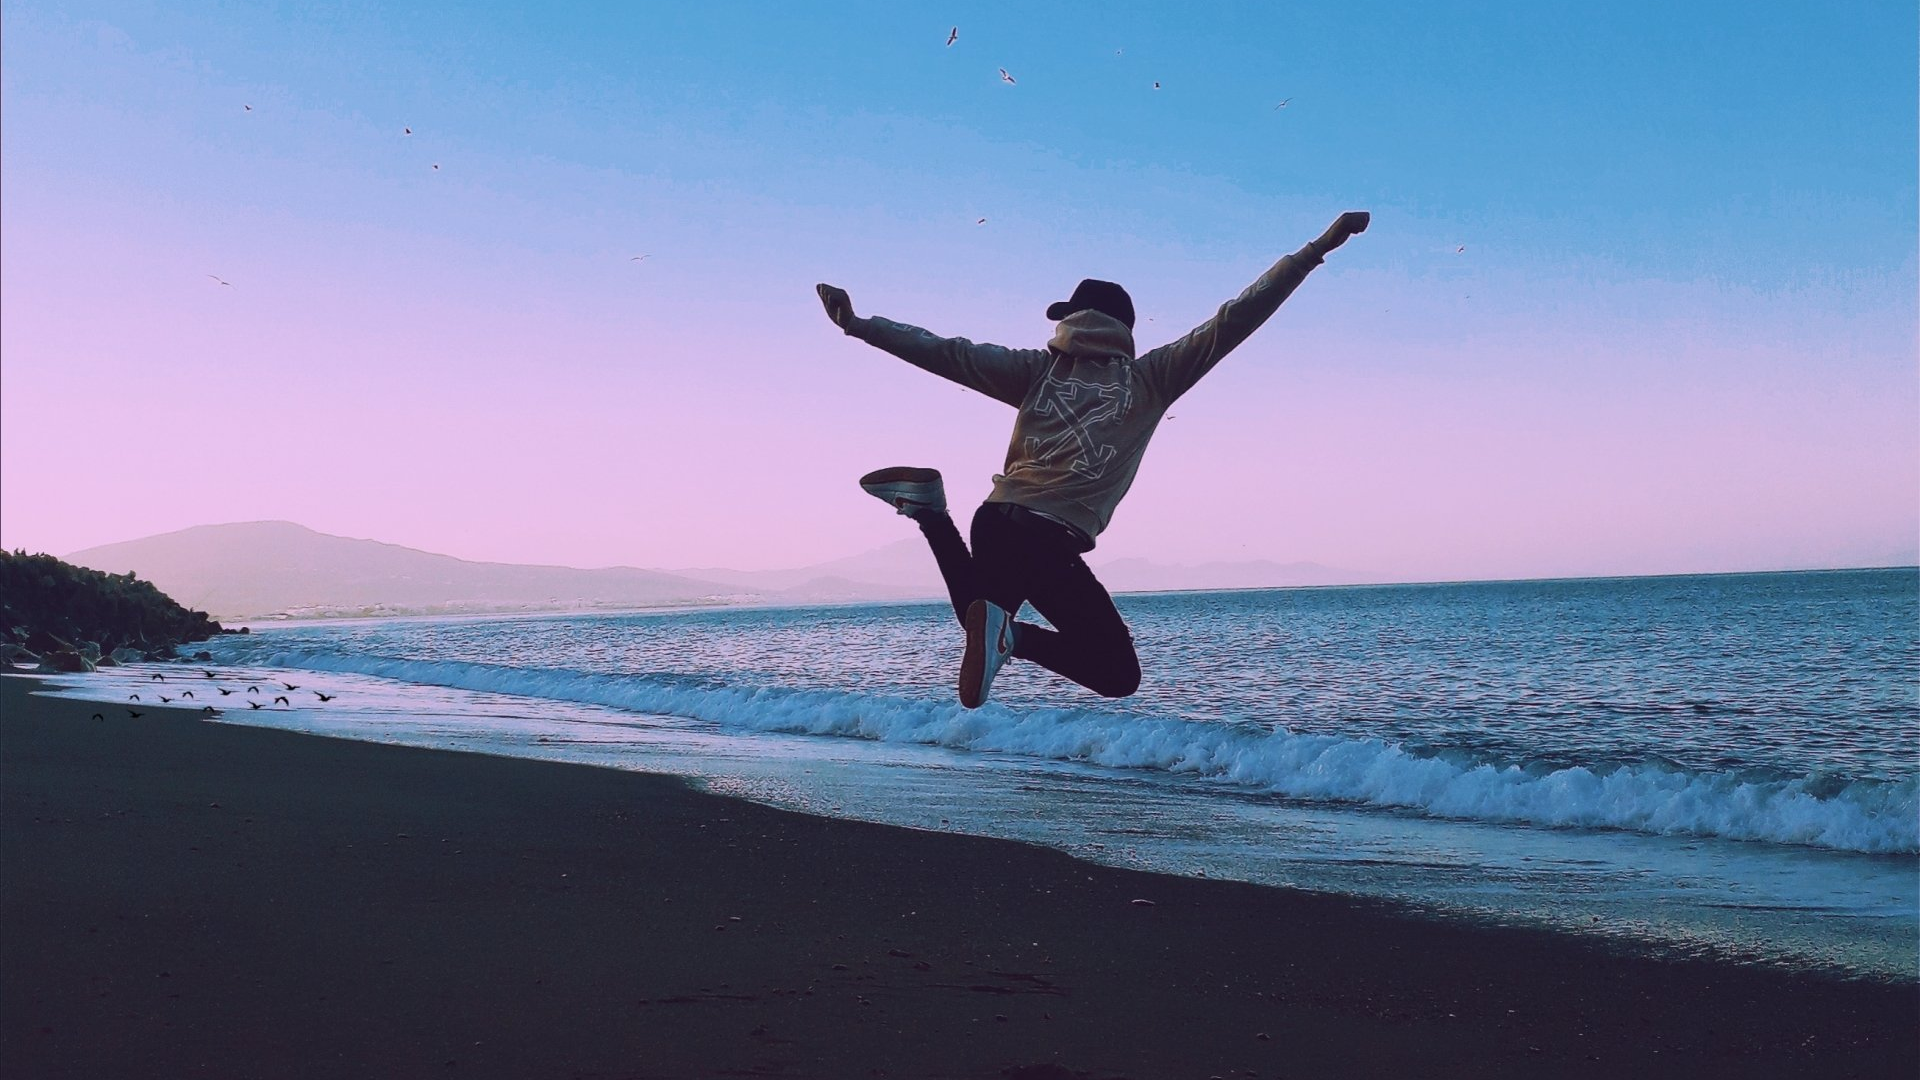 Person jumping in air near ocean